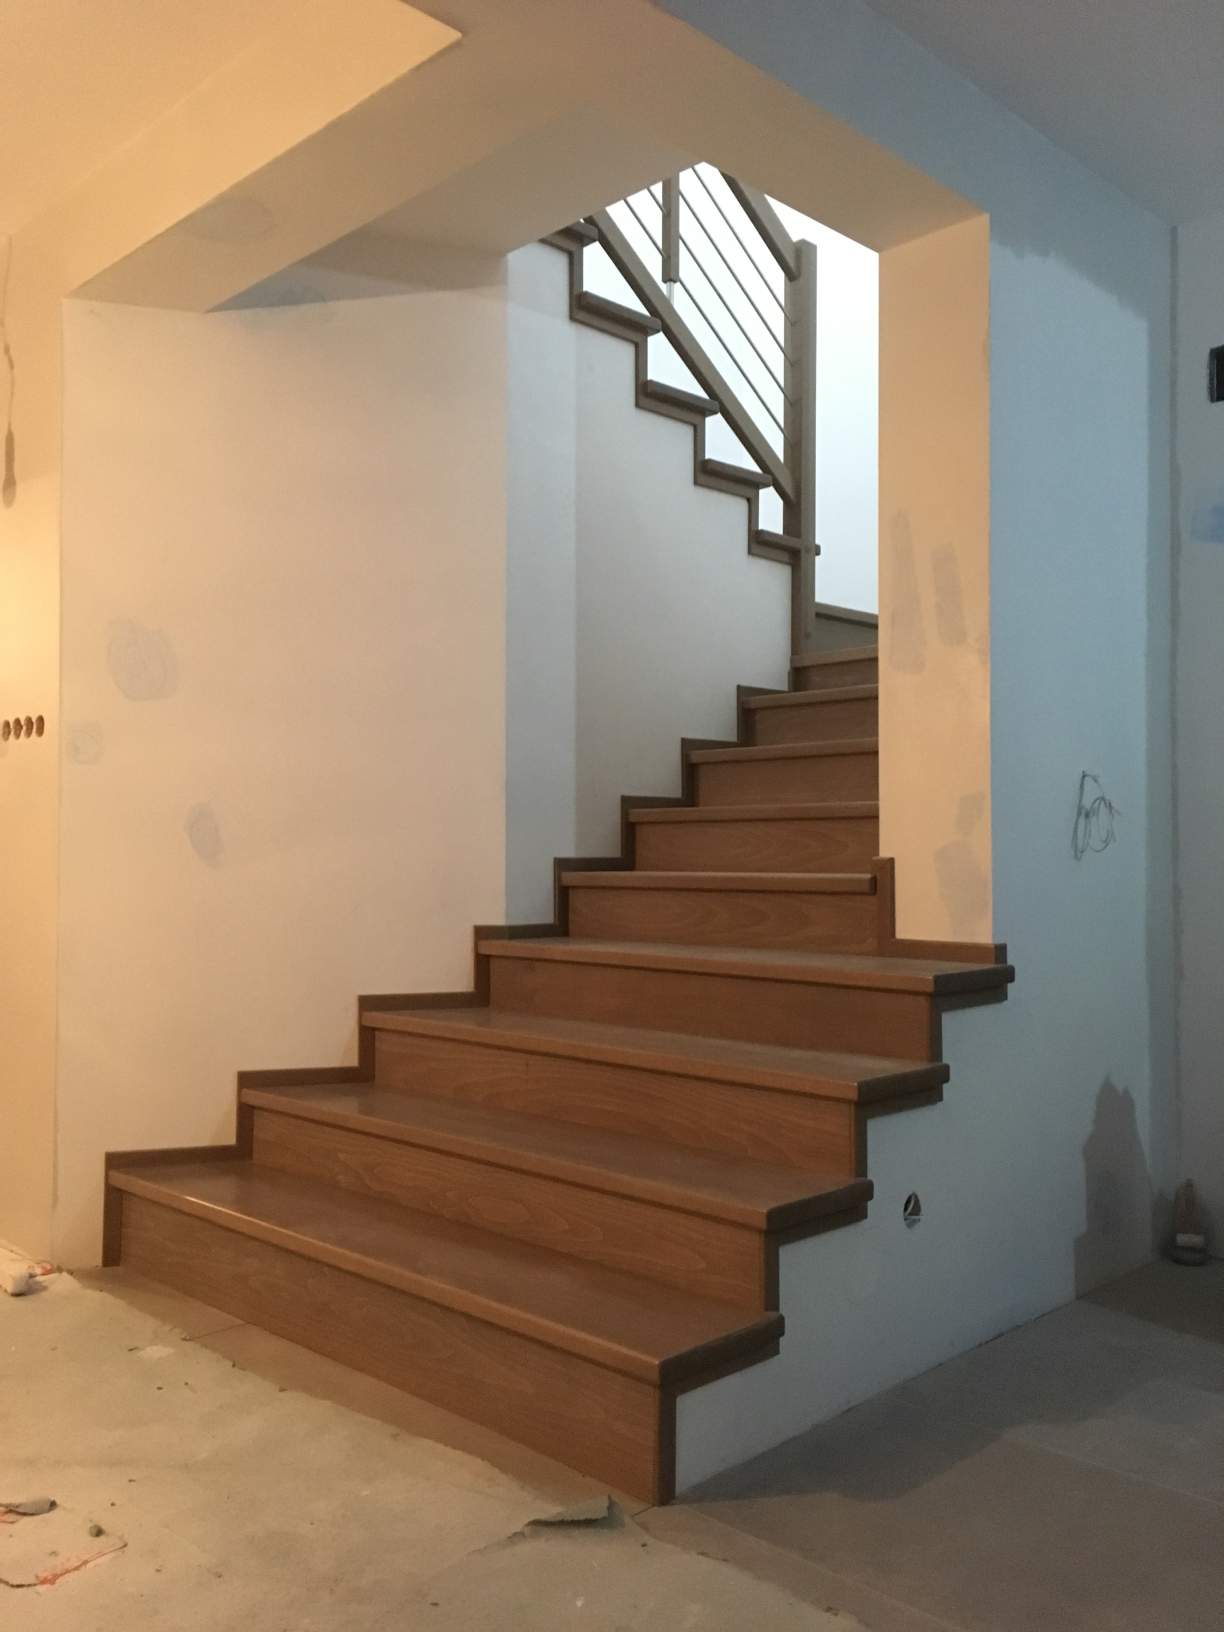 schody obkładane żelbetowe schody na beton stolarstwo heranas